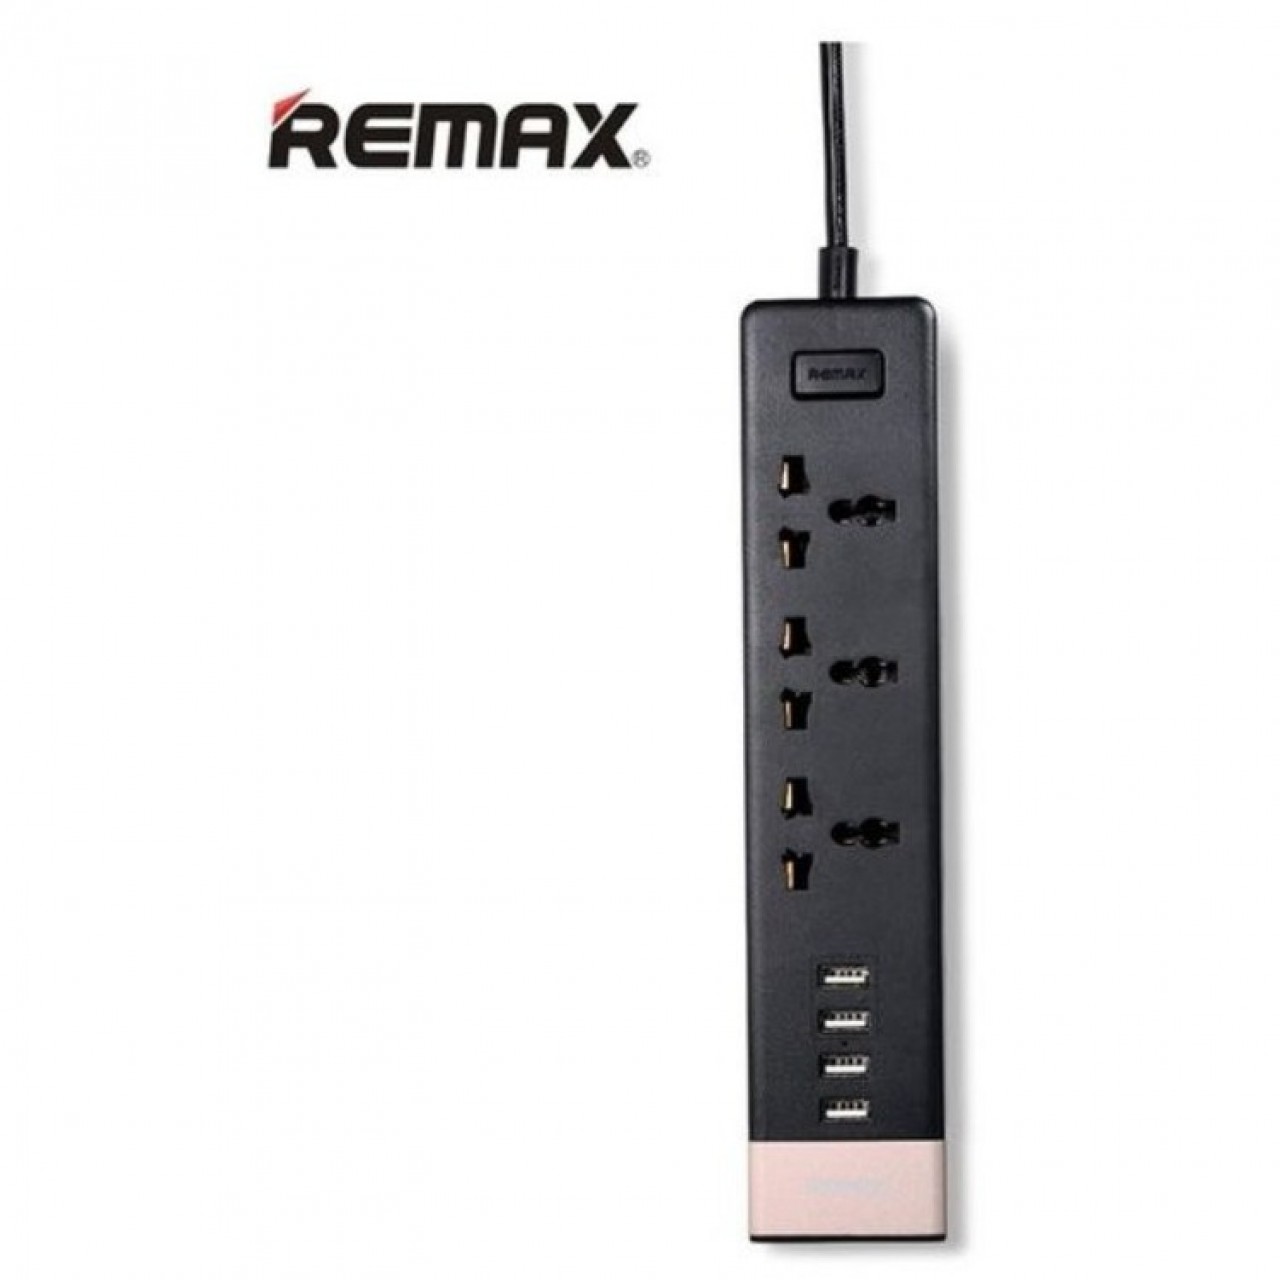 Remax RU-S2 4 USB Ports Hub and 3 Universal Plug 4.2A Power Strip - Black